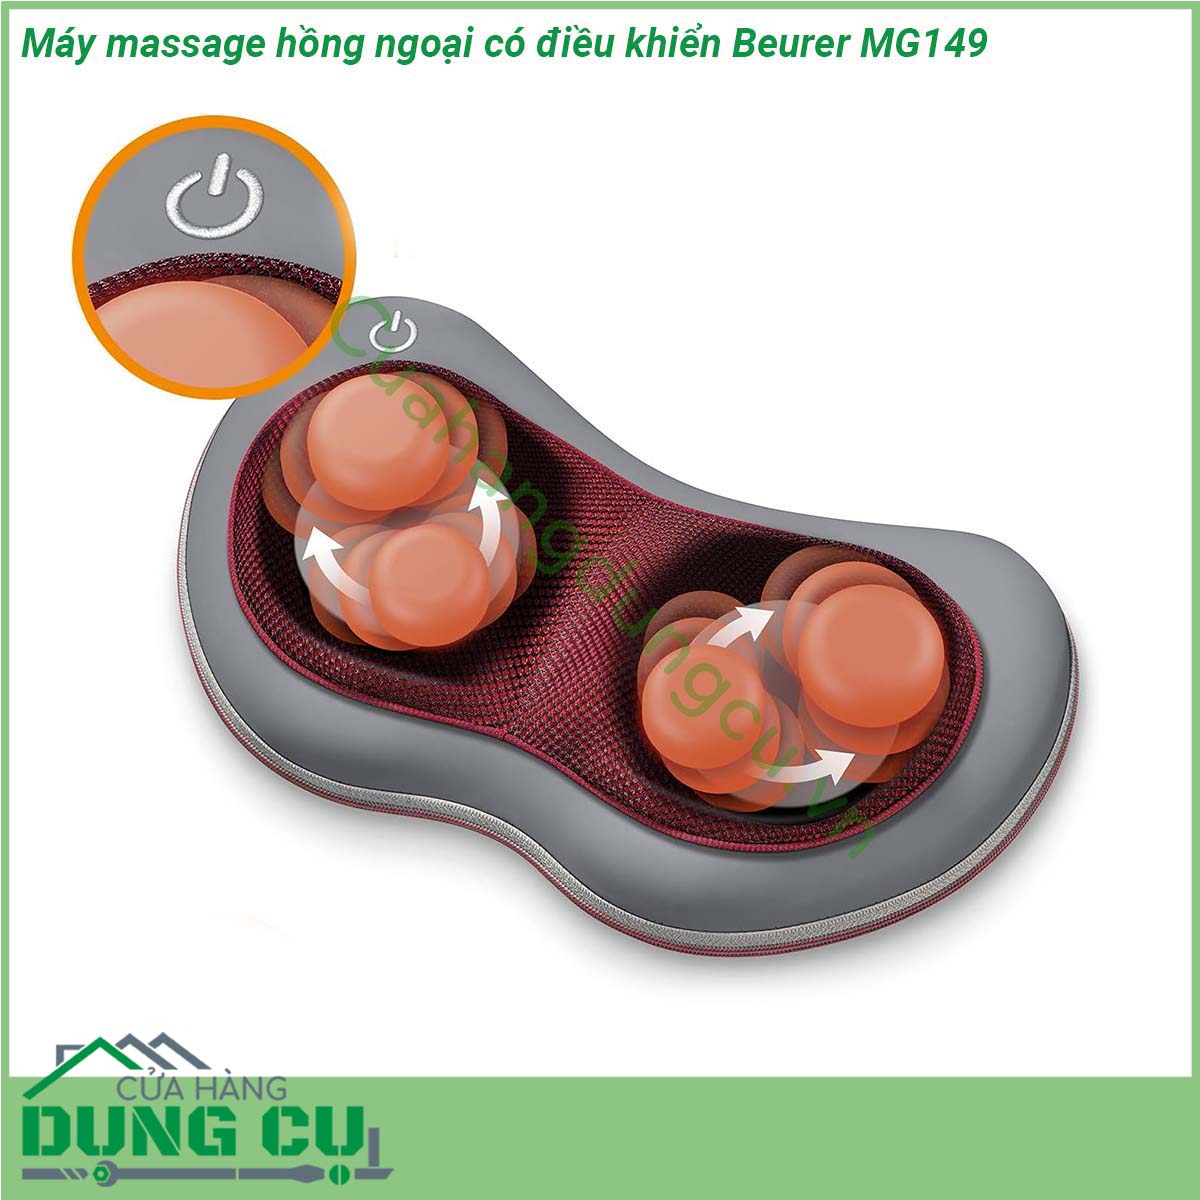 Máy massage hồng ngoại có điều khiển Beurer MG149 được thiết kế gọn nhẹ thích hợp sử dụng ở nhiều vị trí như giường ngủ trên ghế sản phẩm có 4 đầu xoay kết hợp với đèn hồng ngoại sẽ xoa bóp vào các cơ và huyệt giúp giảm đau giảm tình trạng căng cơ xua tan những cơn mệt mỏi ở nhiều vị trí trên cơ thể như đầu gáy lưng chân